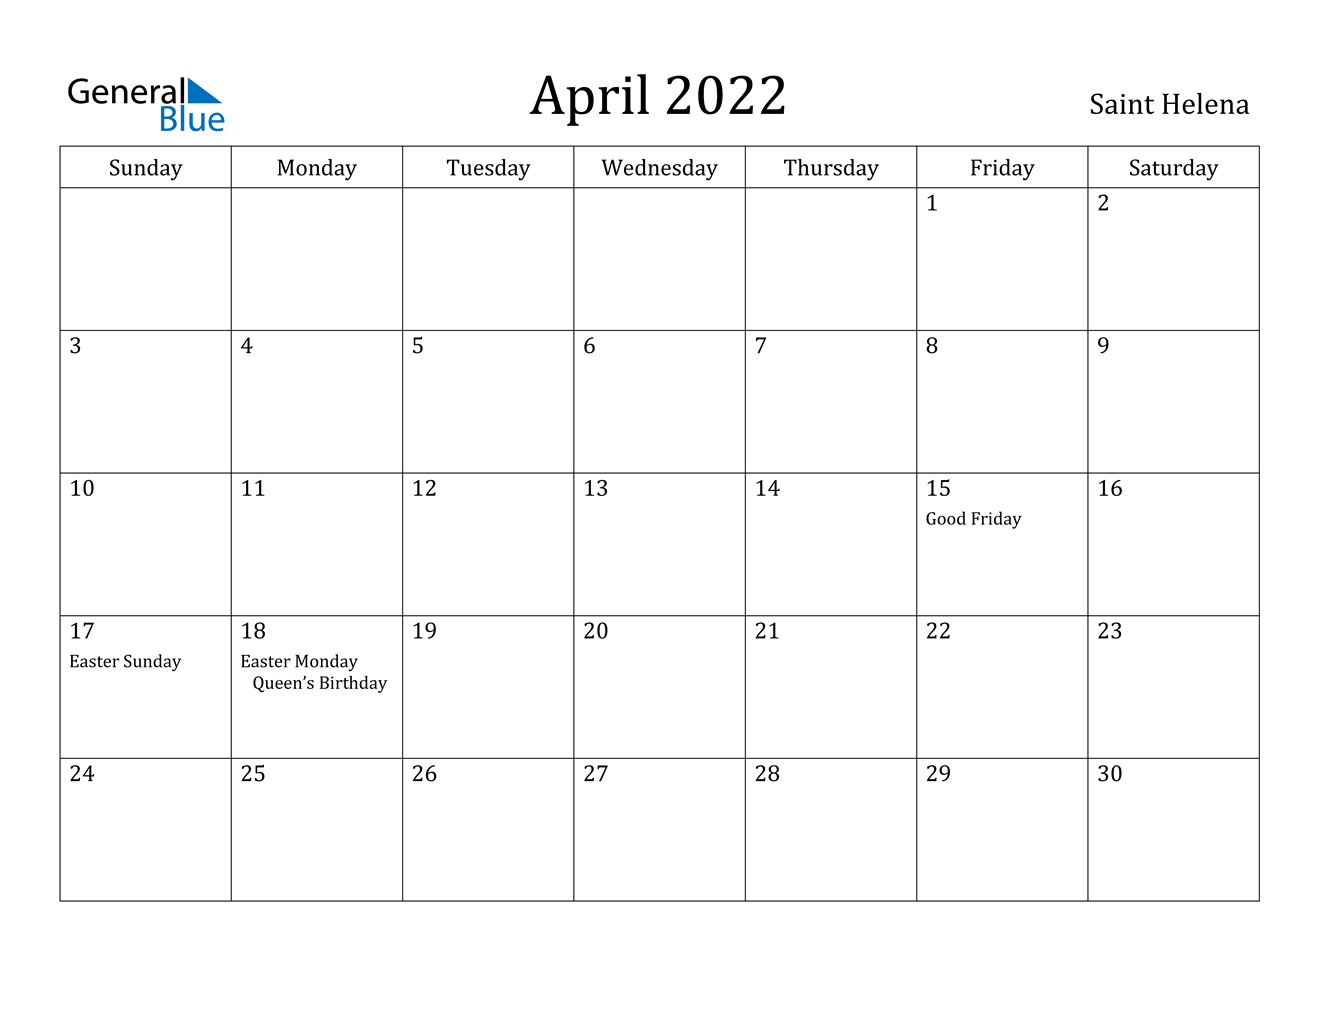 Get April 2022 Calendar With Us Holidays